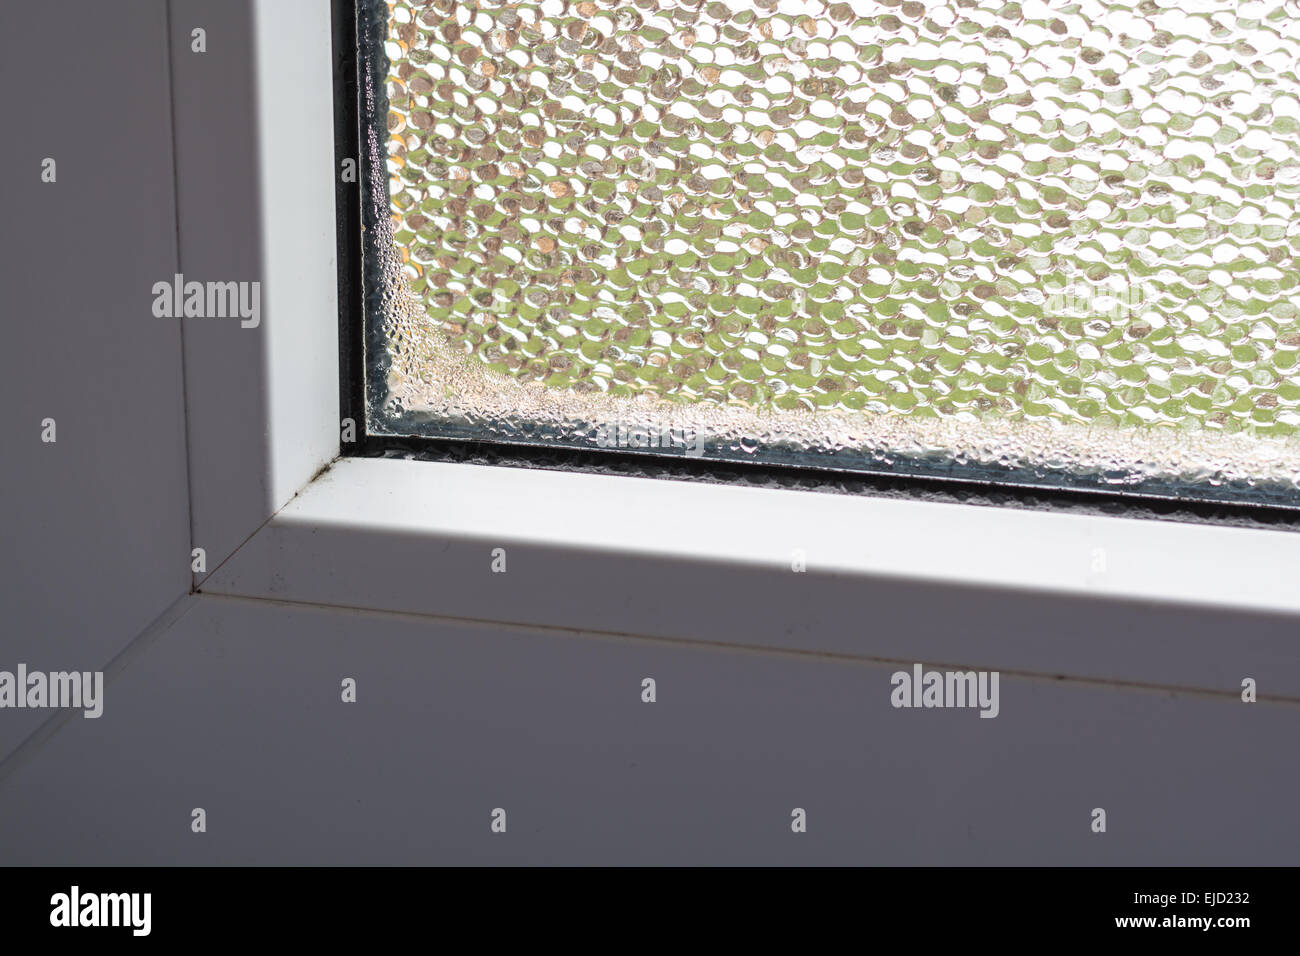 Luftentfeuchter mit Touch Panel funktioniert durch nasse Fenster in der  Wohnung. Die Luftfeuchtigkeit auf Fenster geschrieben. Hohe Feuchtigkeit  Konzept Stockfotografie - Alamy